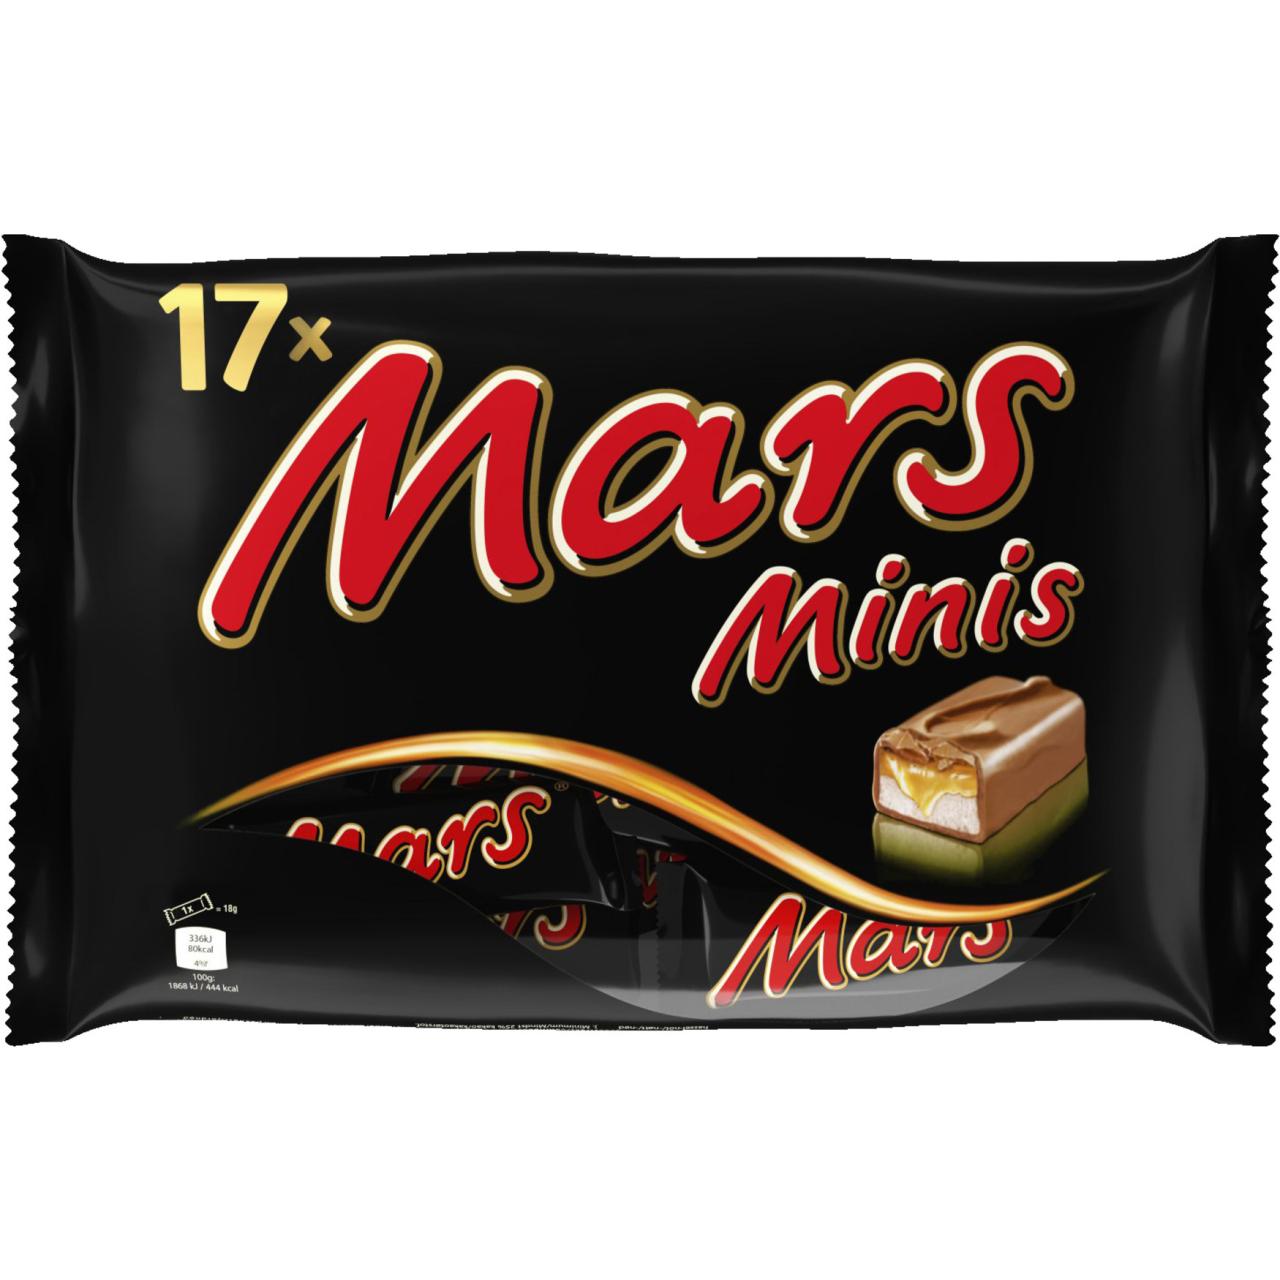 Mars Mini 333g